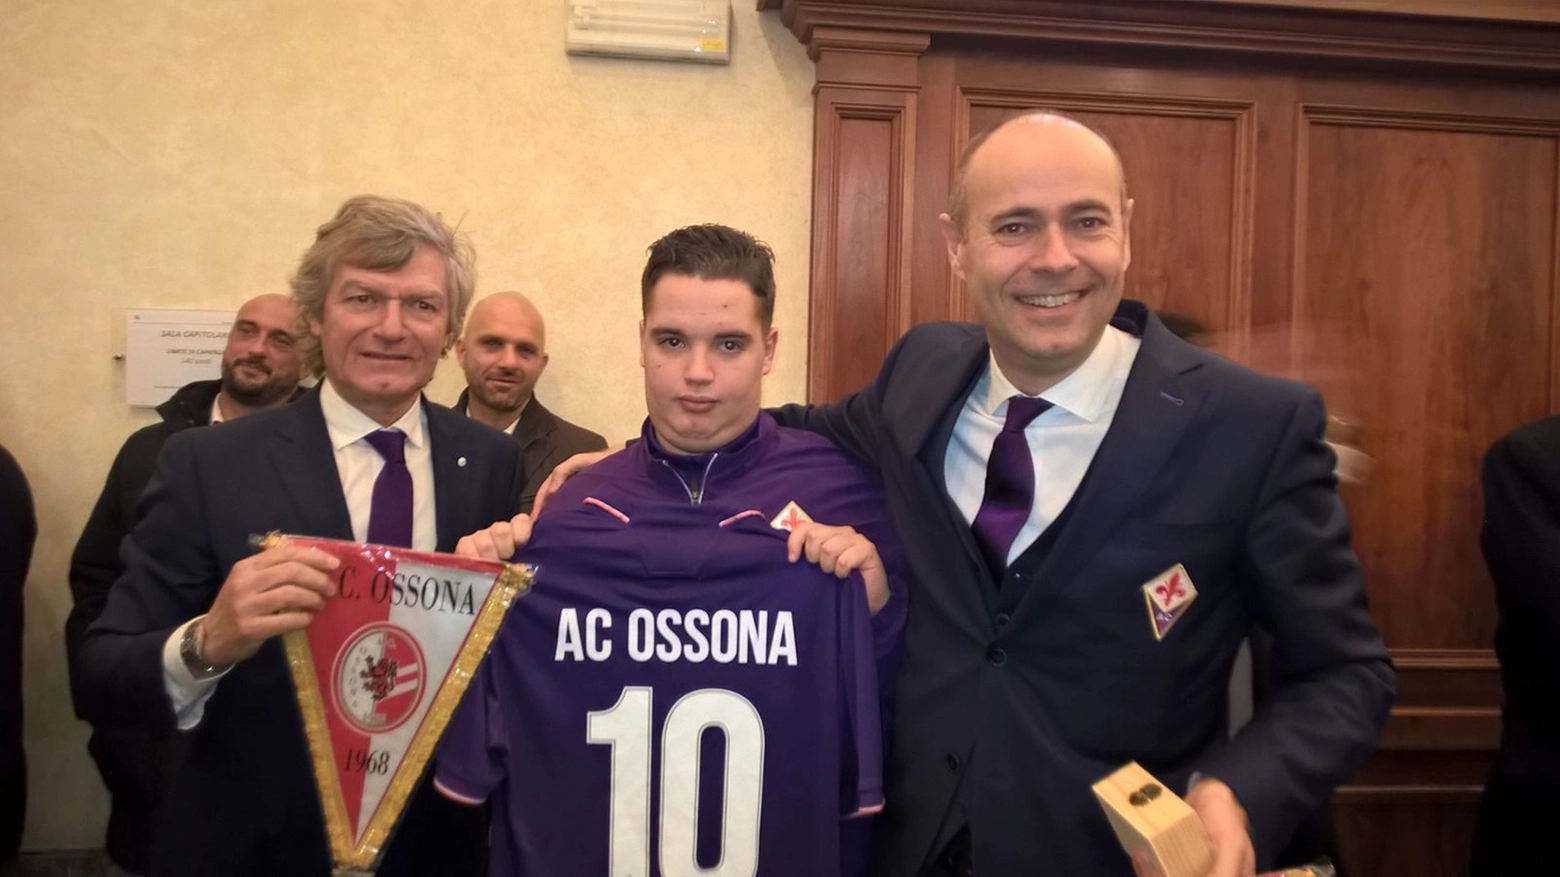 Ossona e Fiorentina